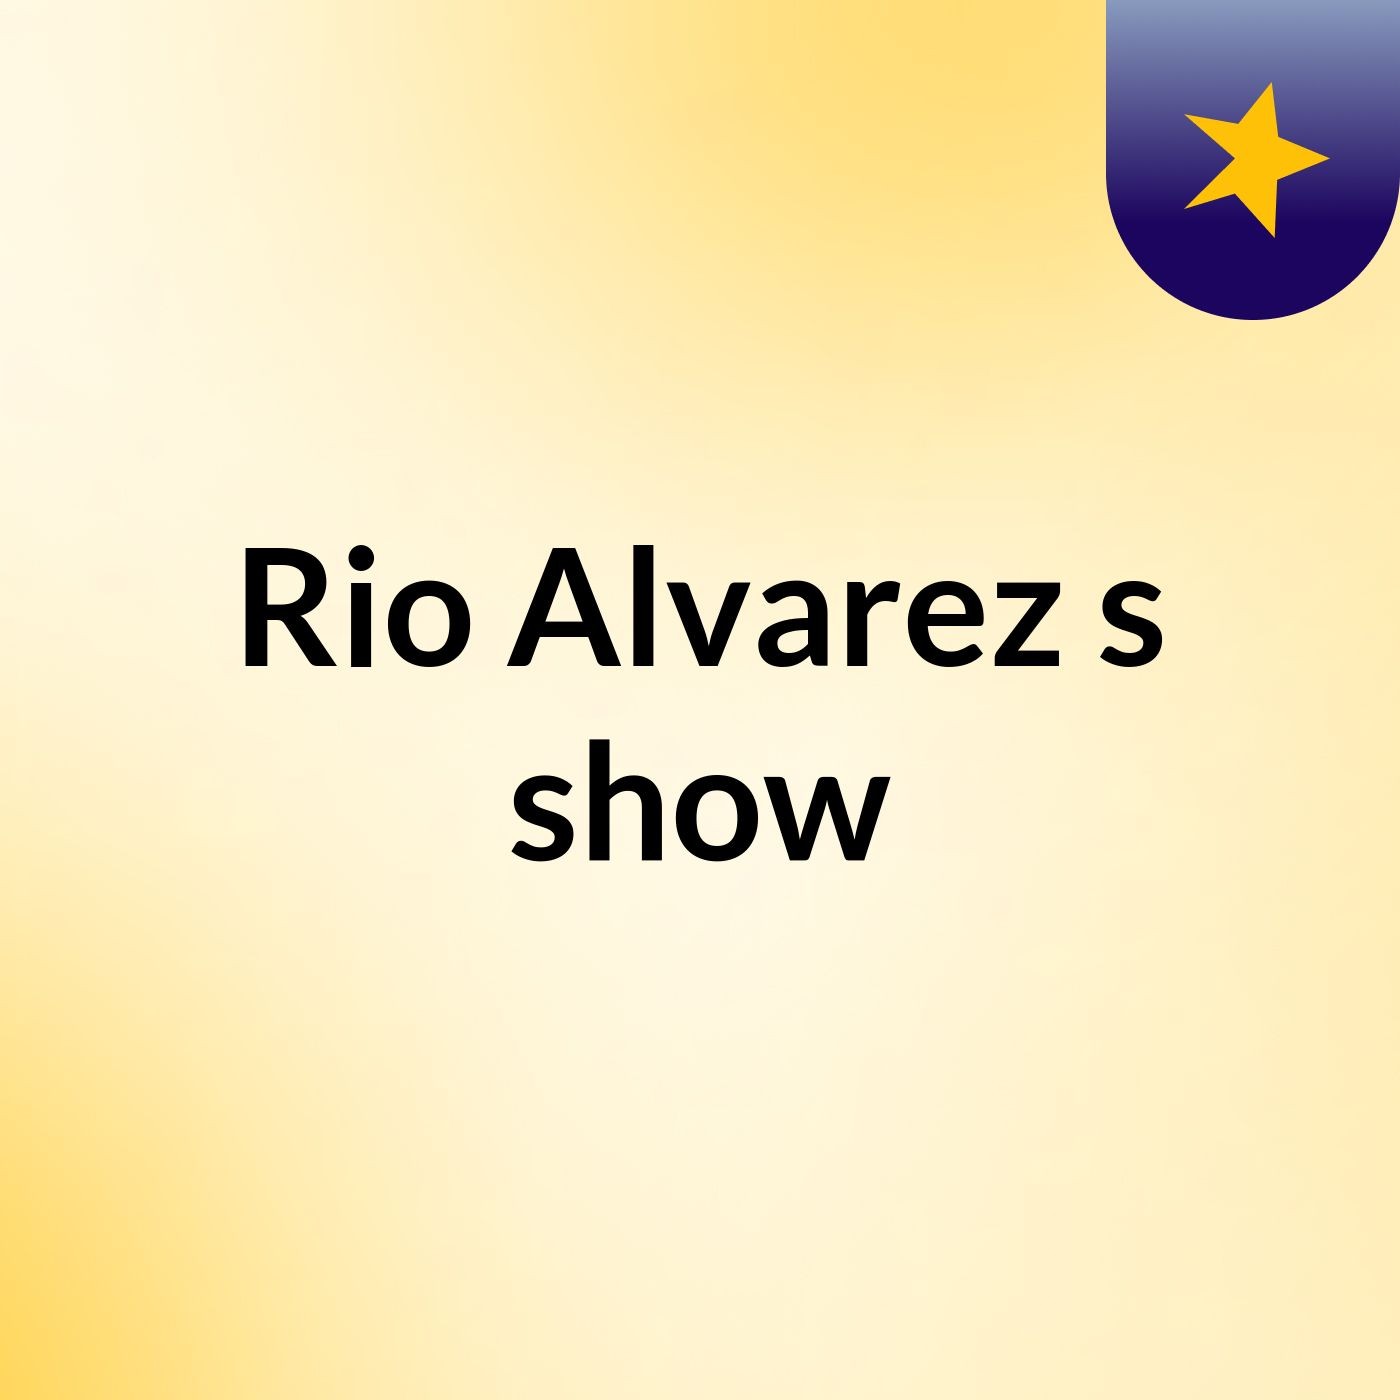 Rio Alvarez's show